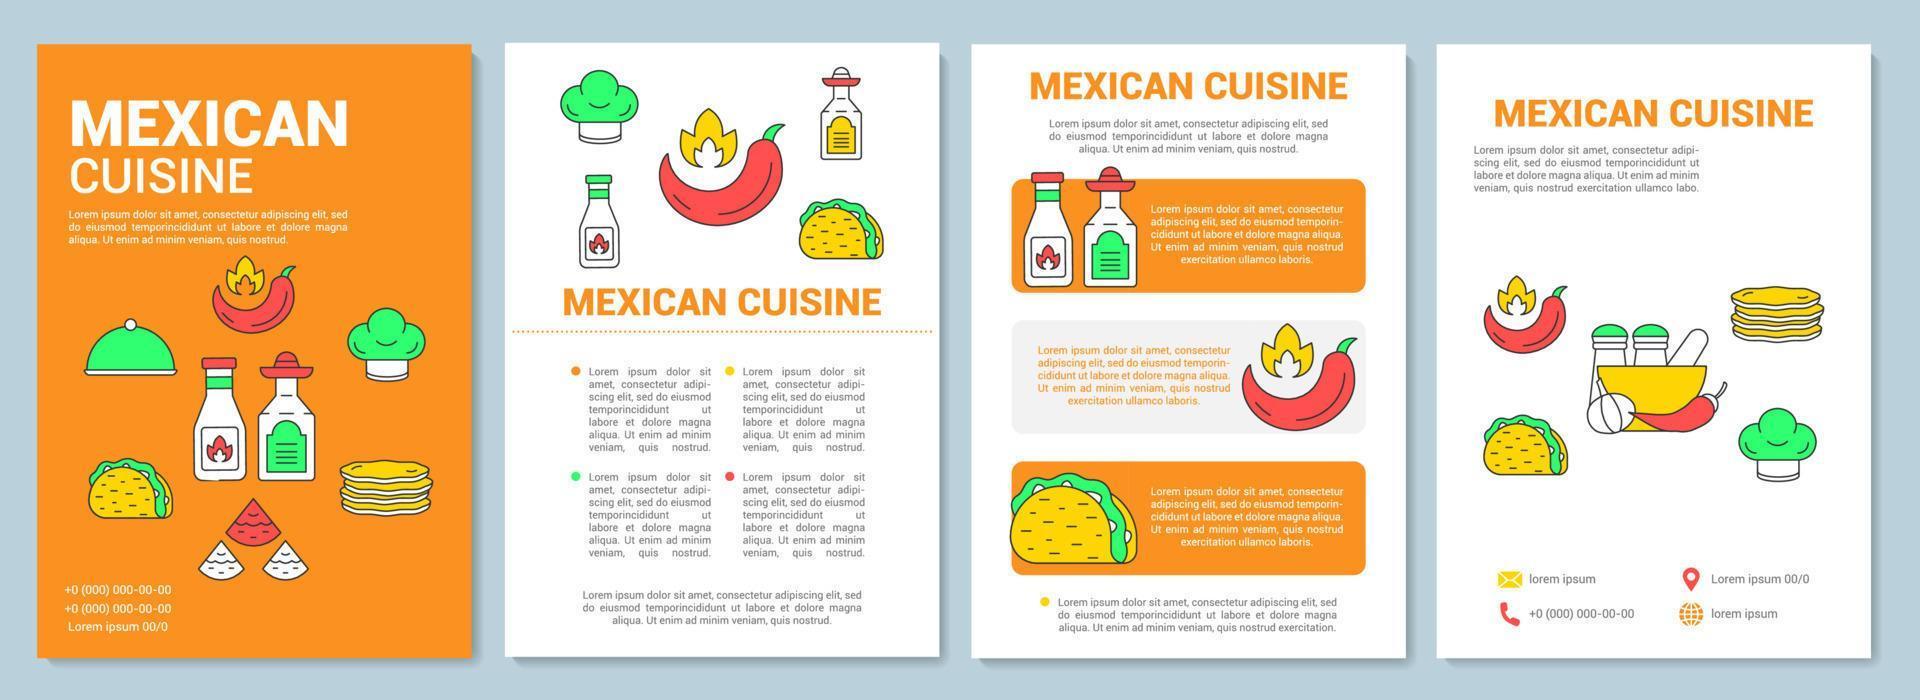 mexikansk mat broschyr mall layout. mexico traditionell mat flygblad, broschyr, broschyr print design med linjära illustrationer. vektor sidlayouter för tidskrifter, årsredovisningar, reklamaffischer